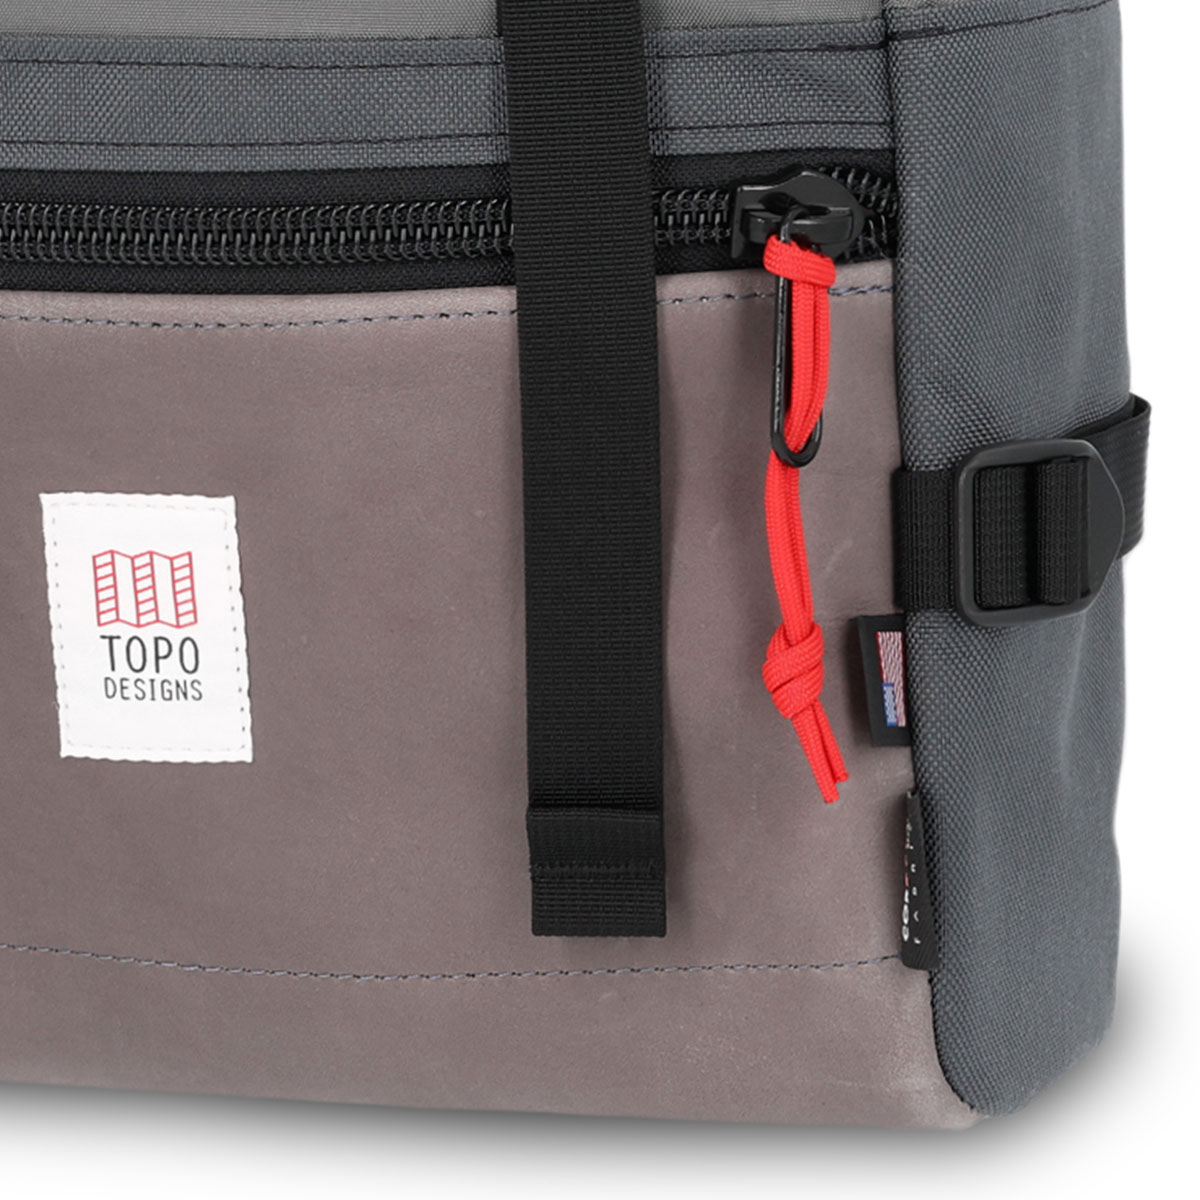 Topo Designs Rover Pack Leather Charcoal/Charcoal Leather, der ideale Rucksack für den täglichen Gebrauch